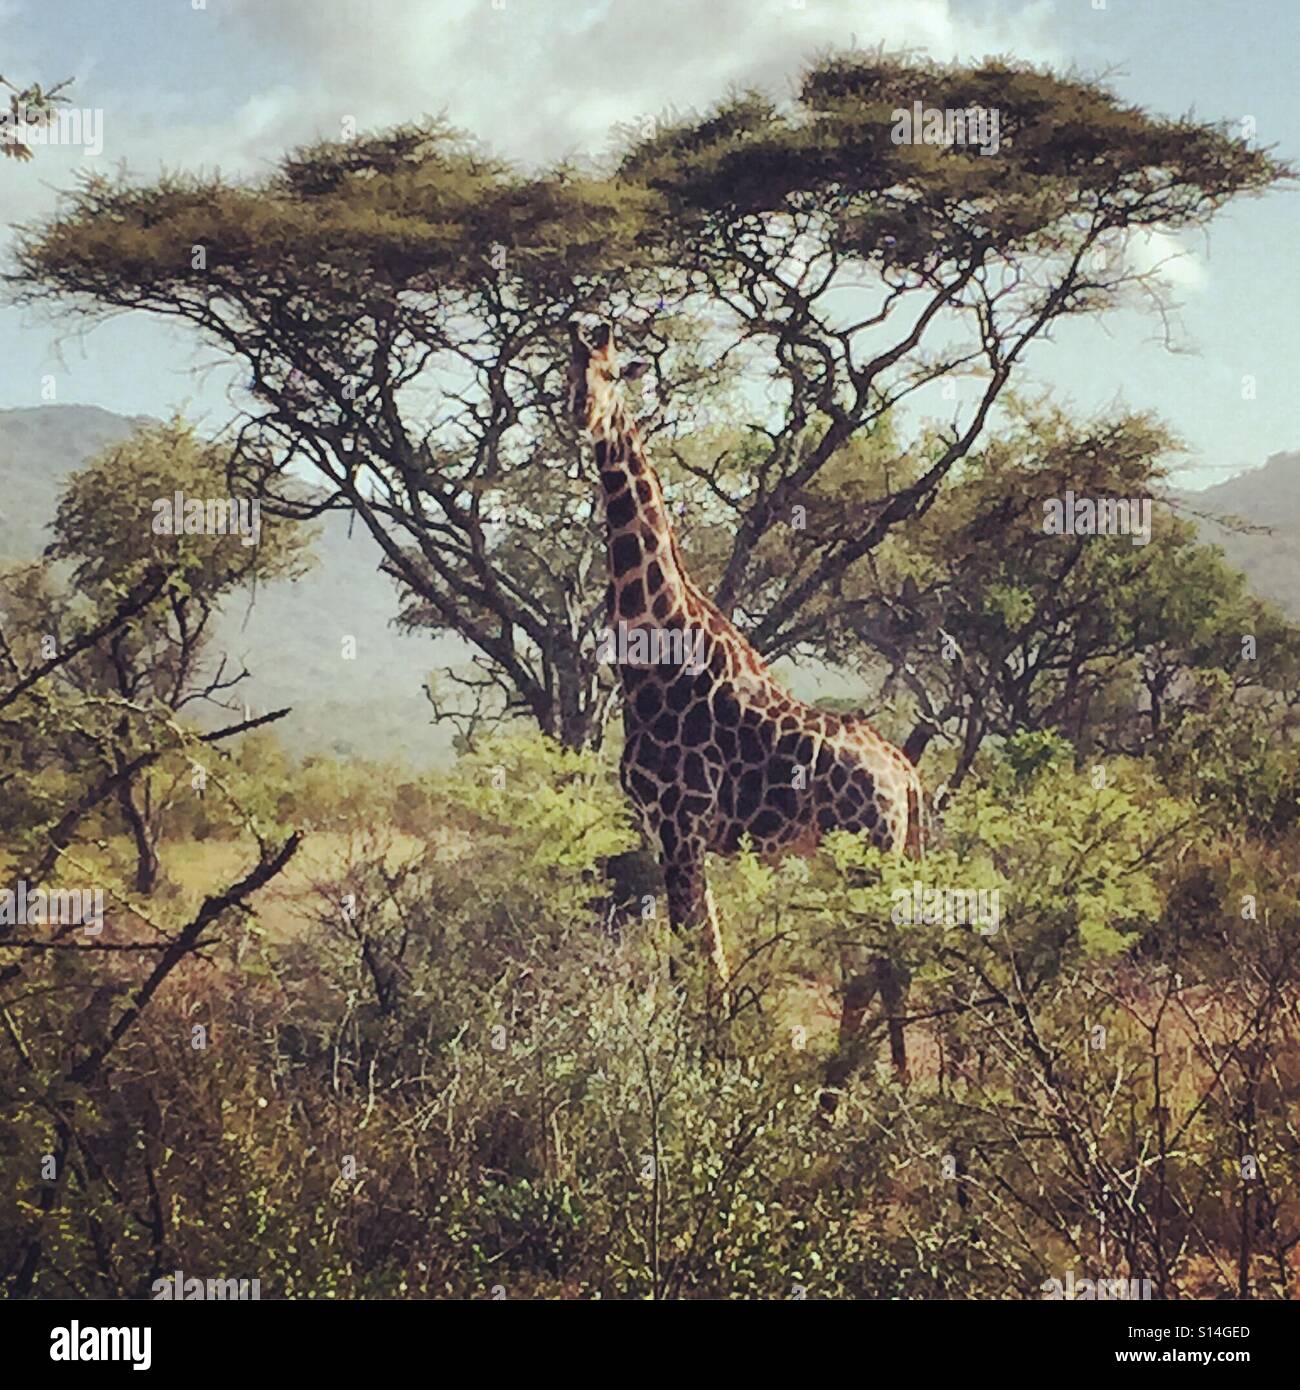 Giraffe posing on safari Stock Photo